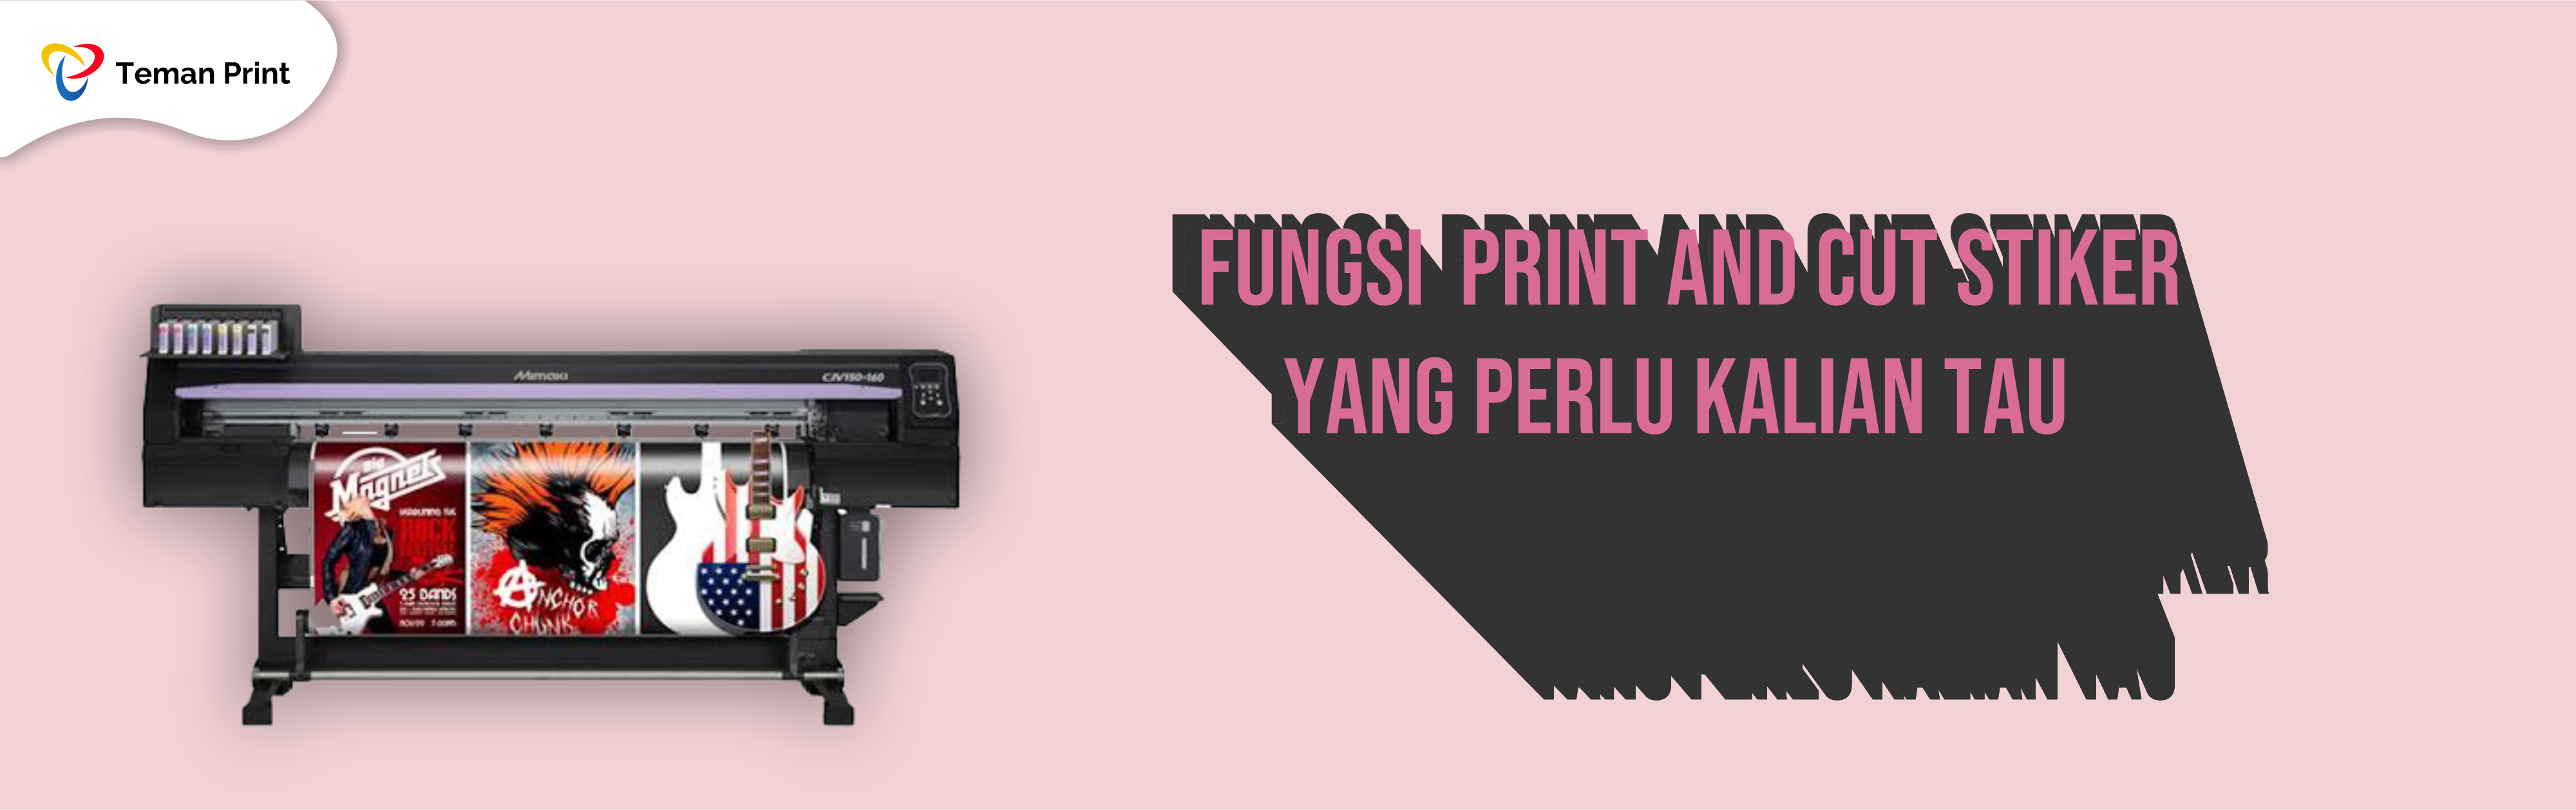 Fungsi Print and Cut Sticker Yang Perlu Kalian Ketahui!